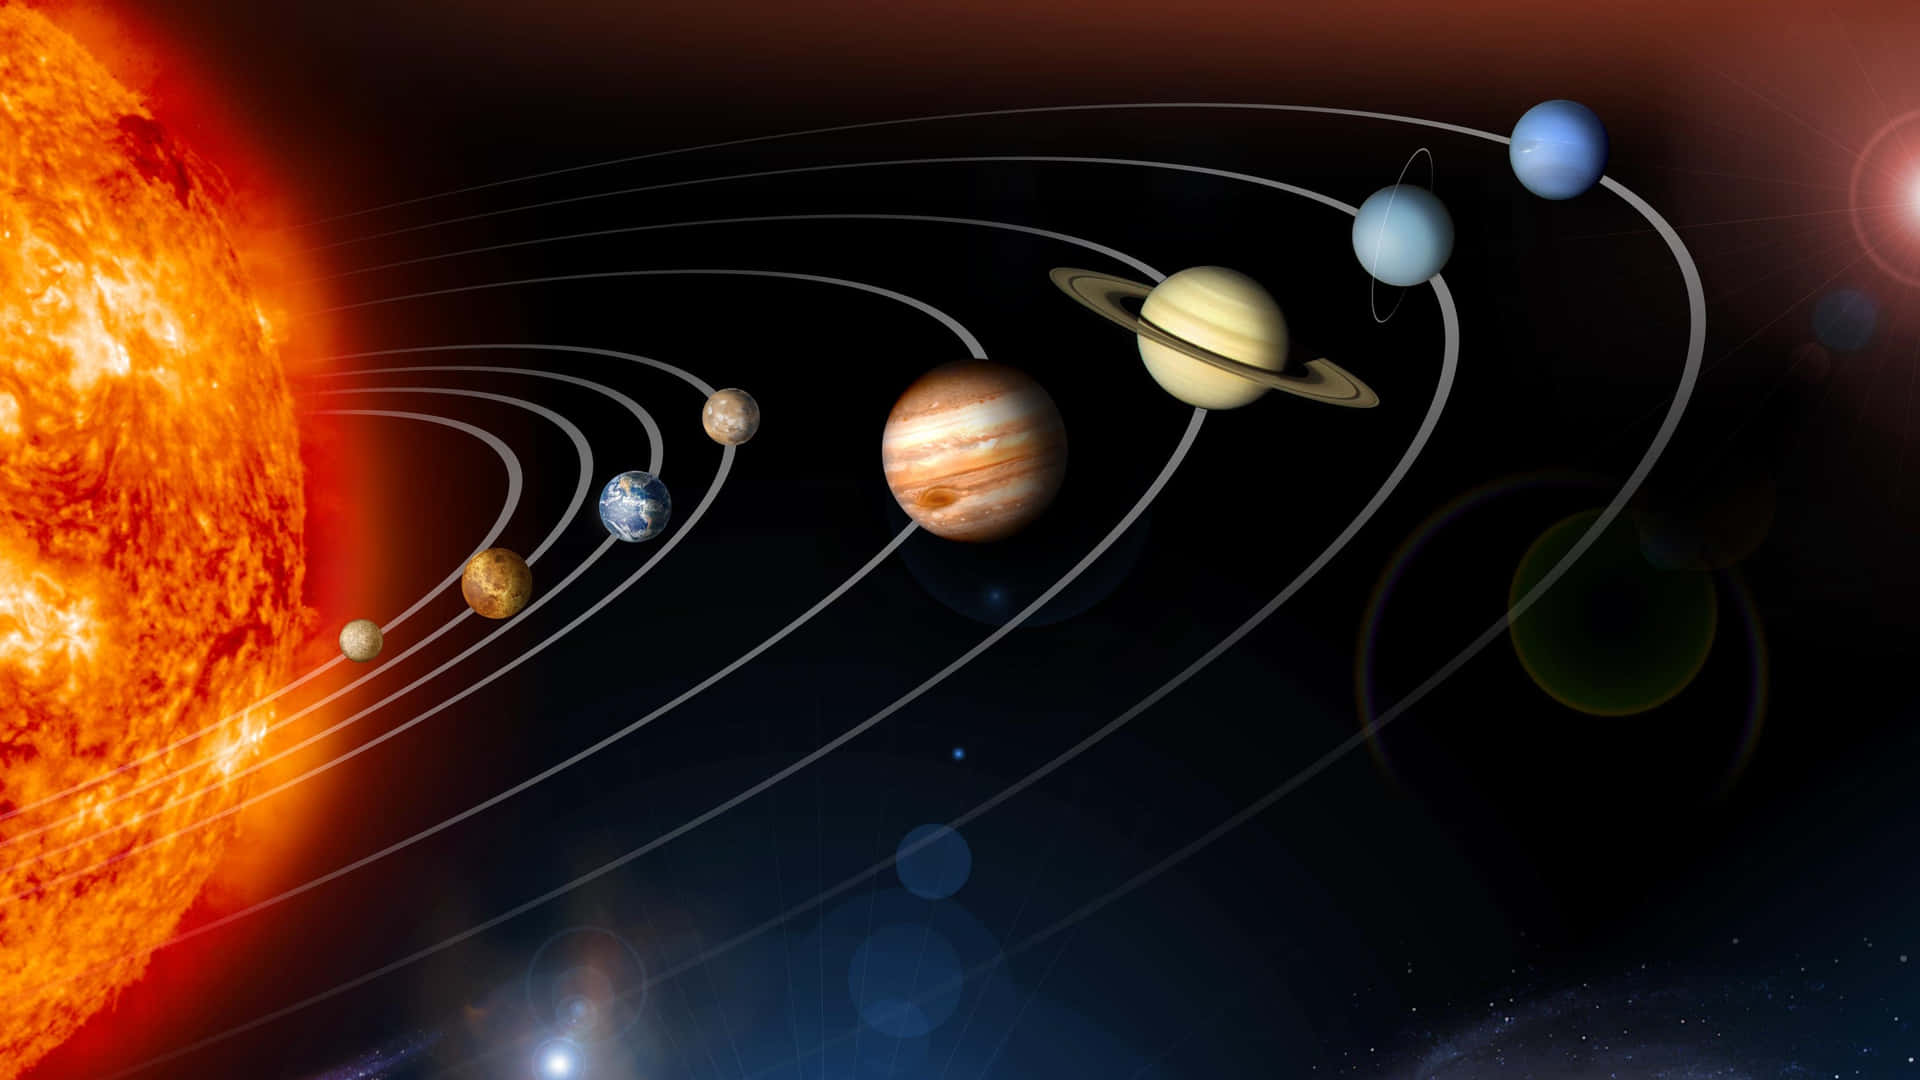 Imagendel Sol Y Los Planetas En El Sistema Solar.